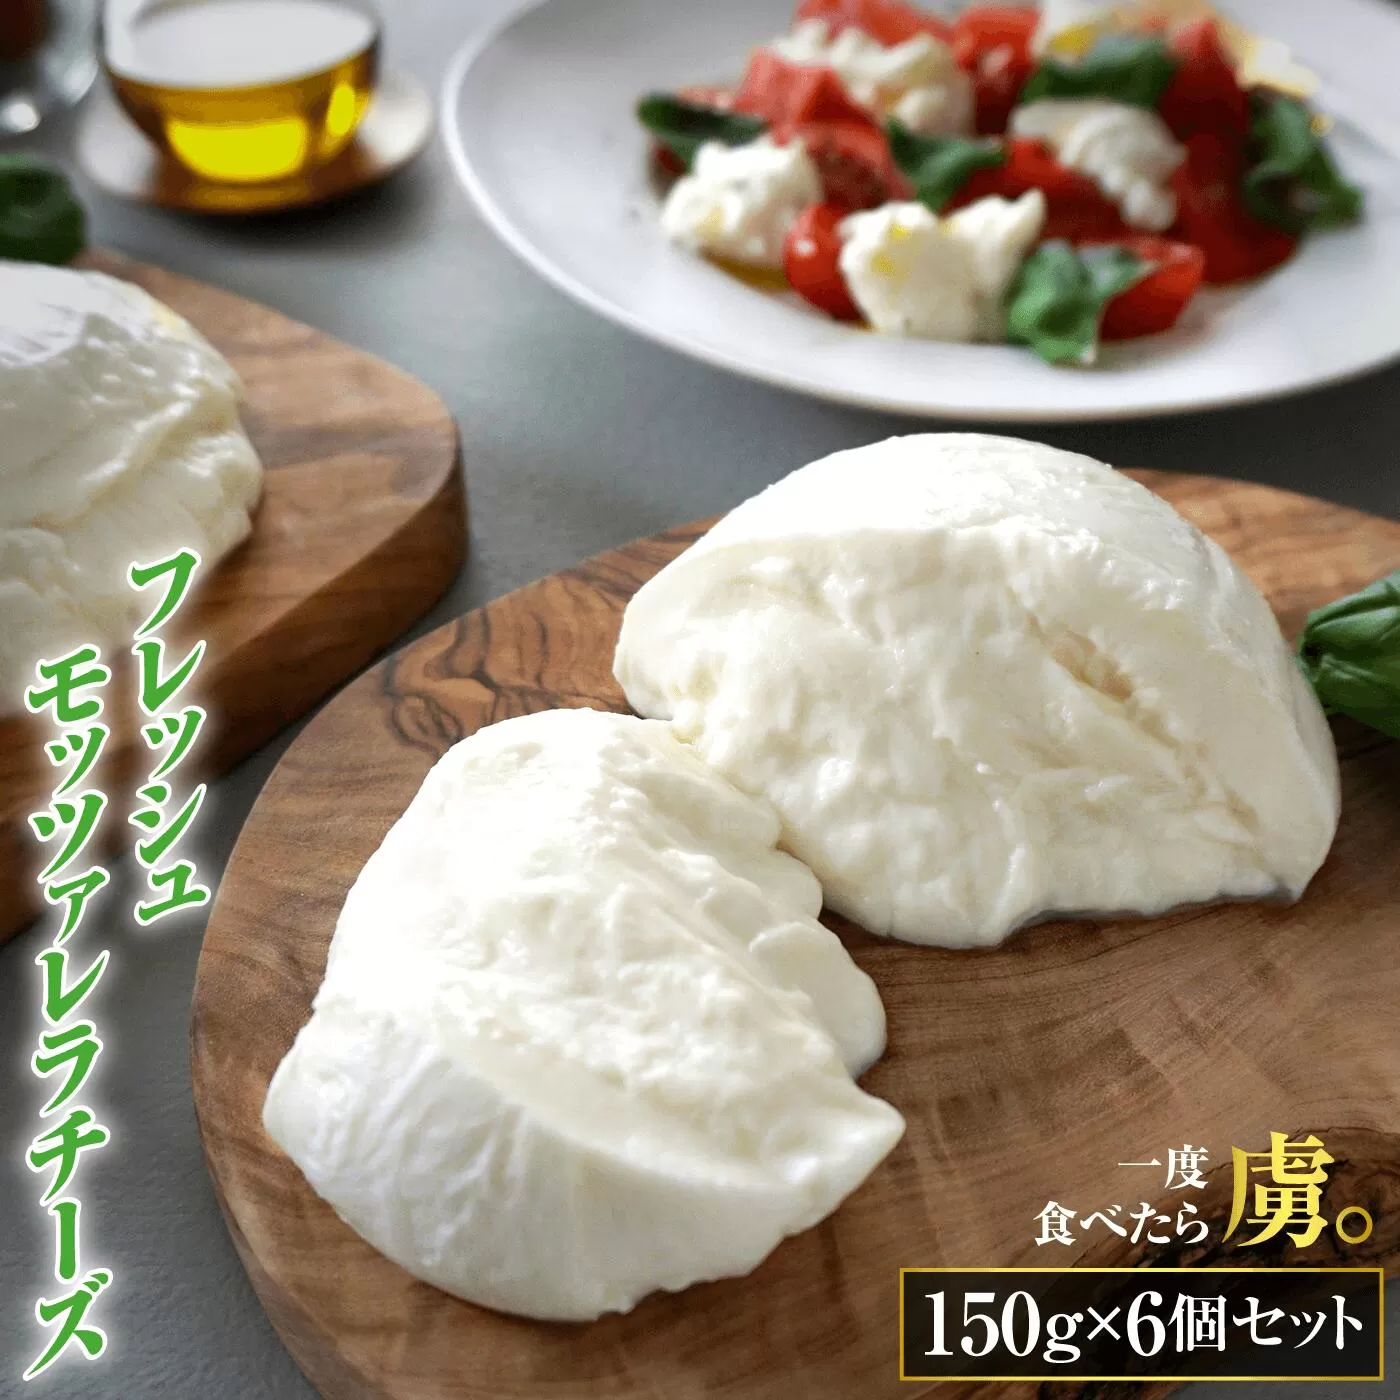 モッツァレラチーズ6個入セット《北海道恵庭市》【150001】